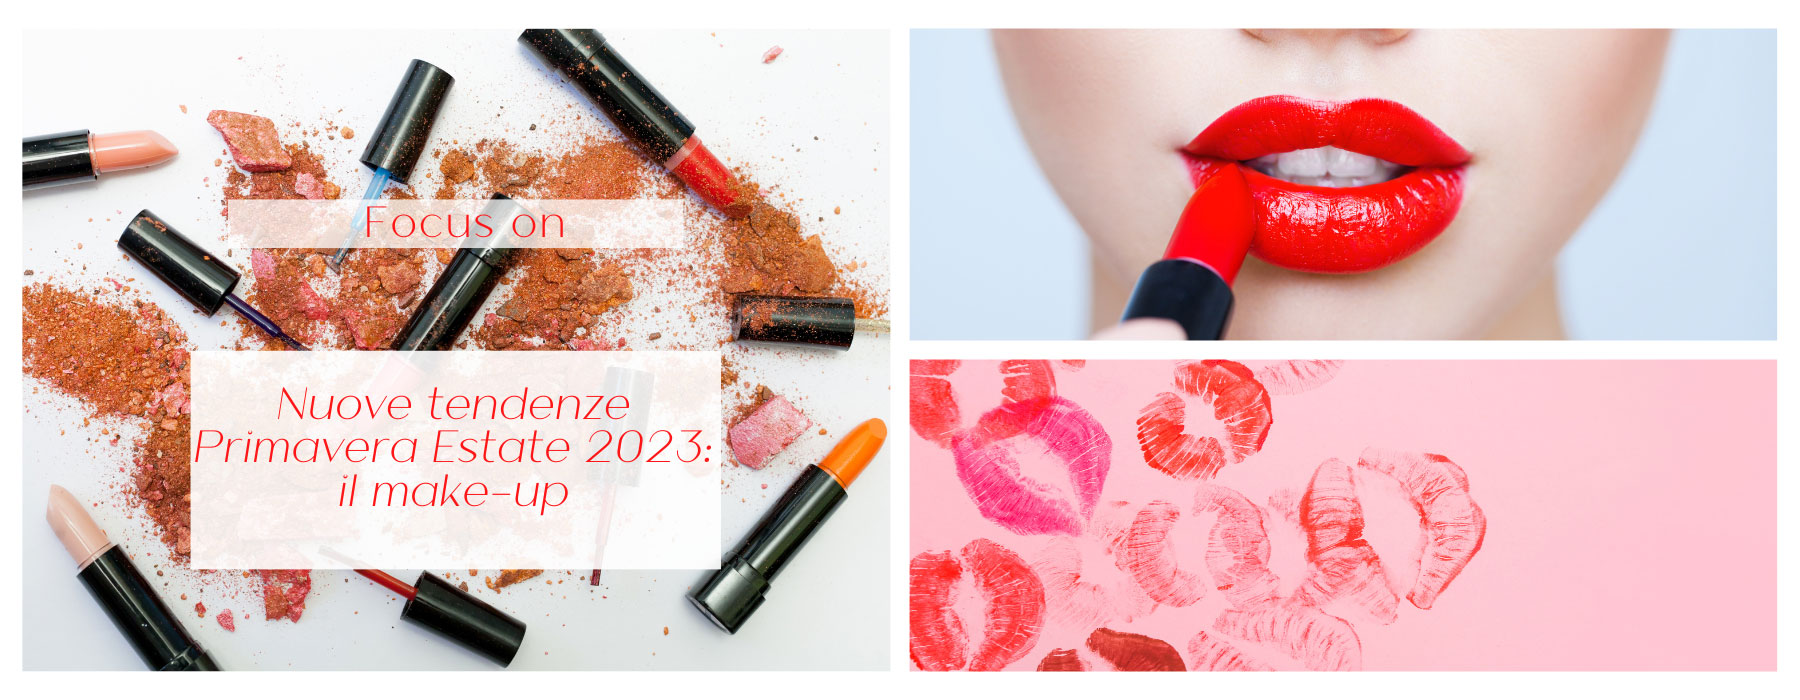 Nuove tendenze Primavera Estate 2023: il make-up